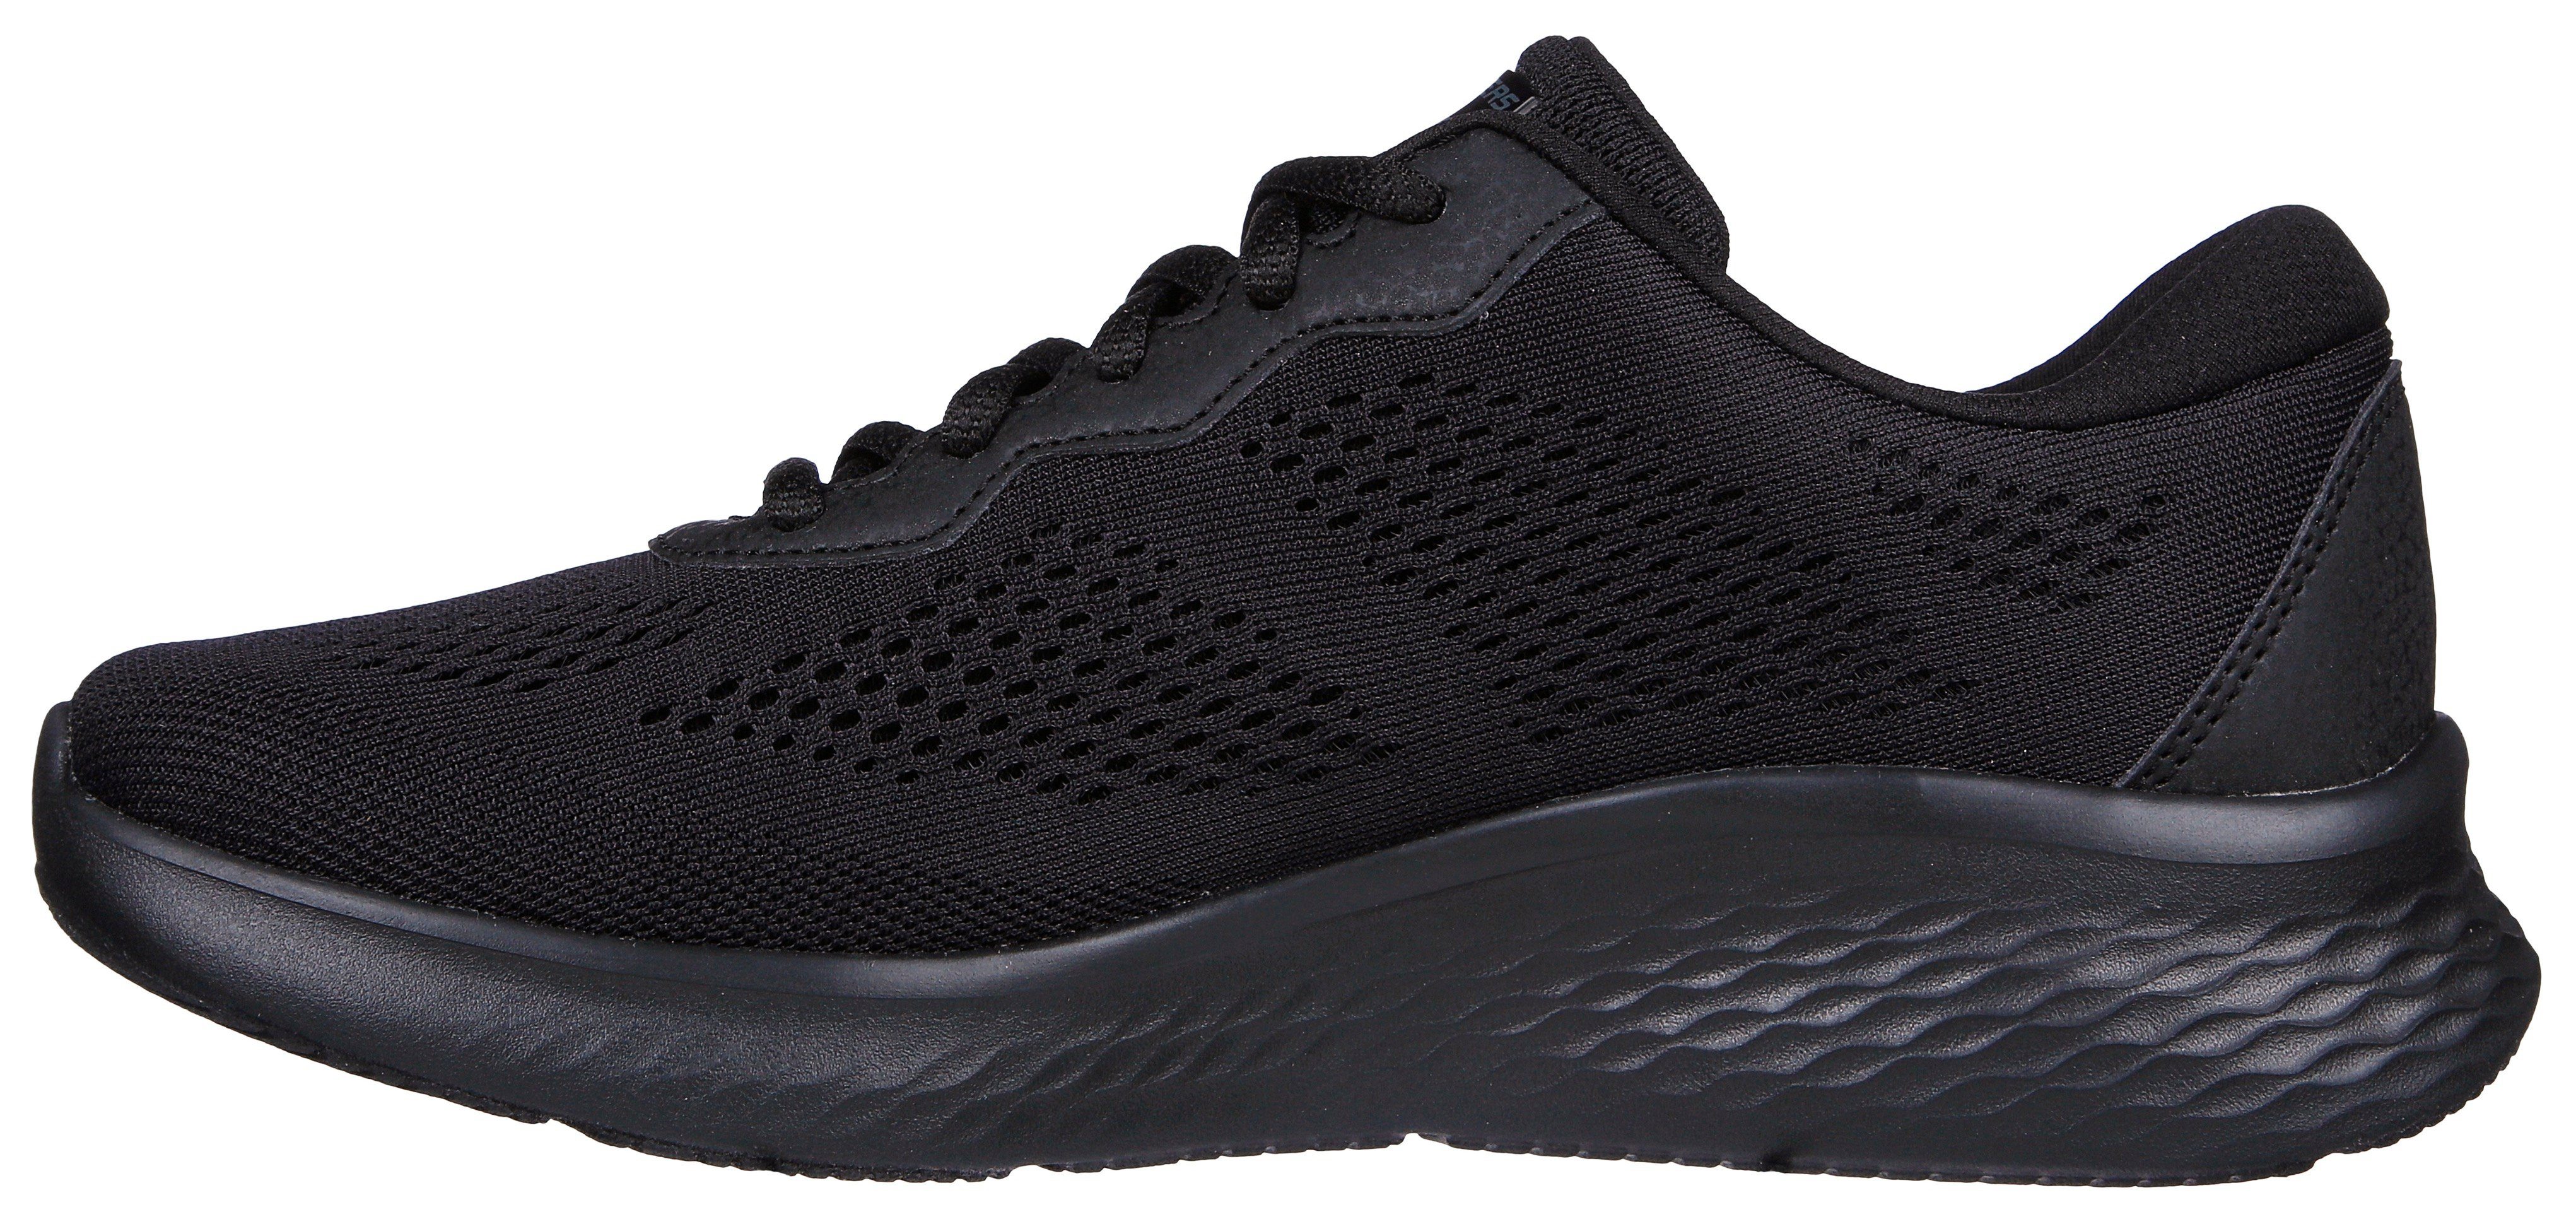 Skechers SKECH-LITE PRO geeignet schwarz für Sneaker - Maschinenwäsche